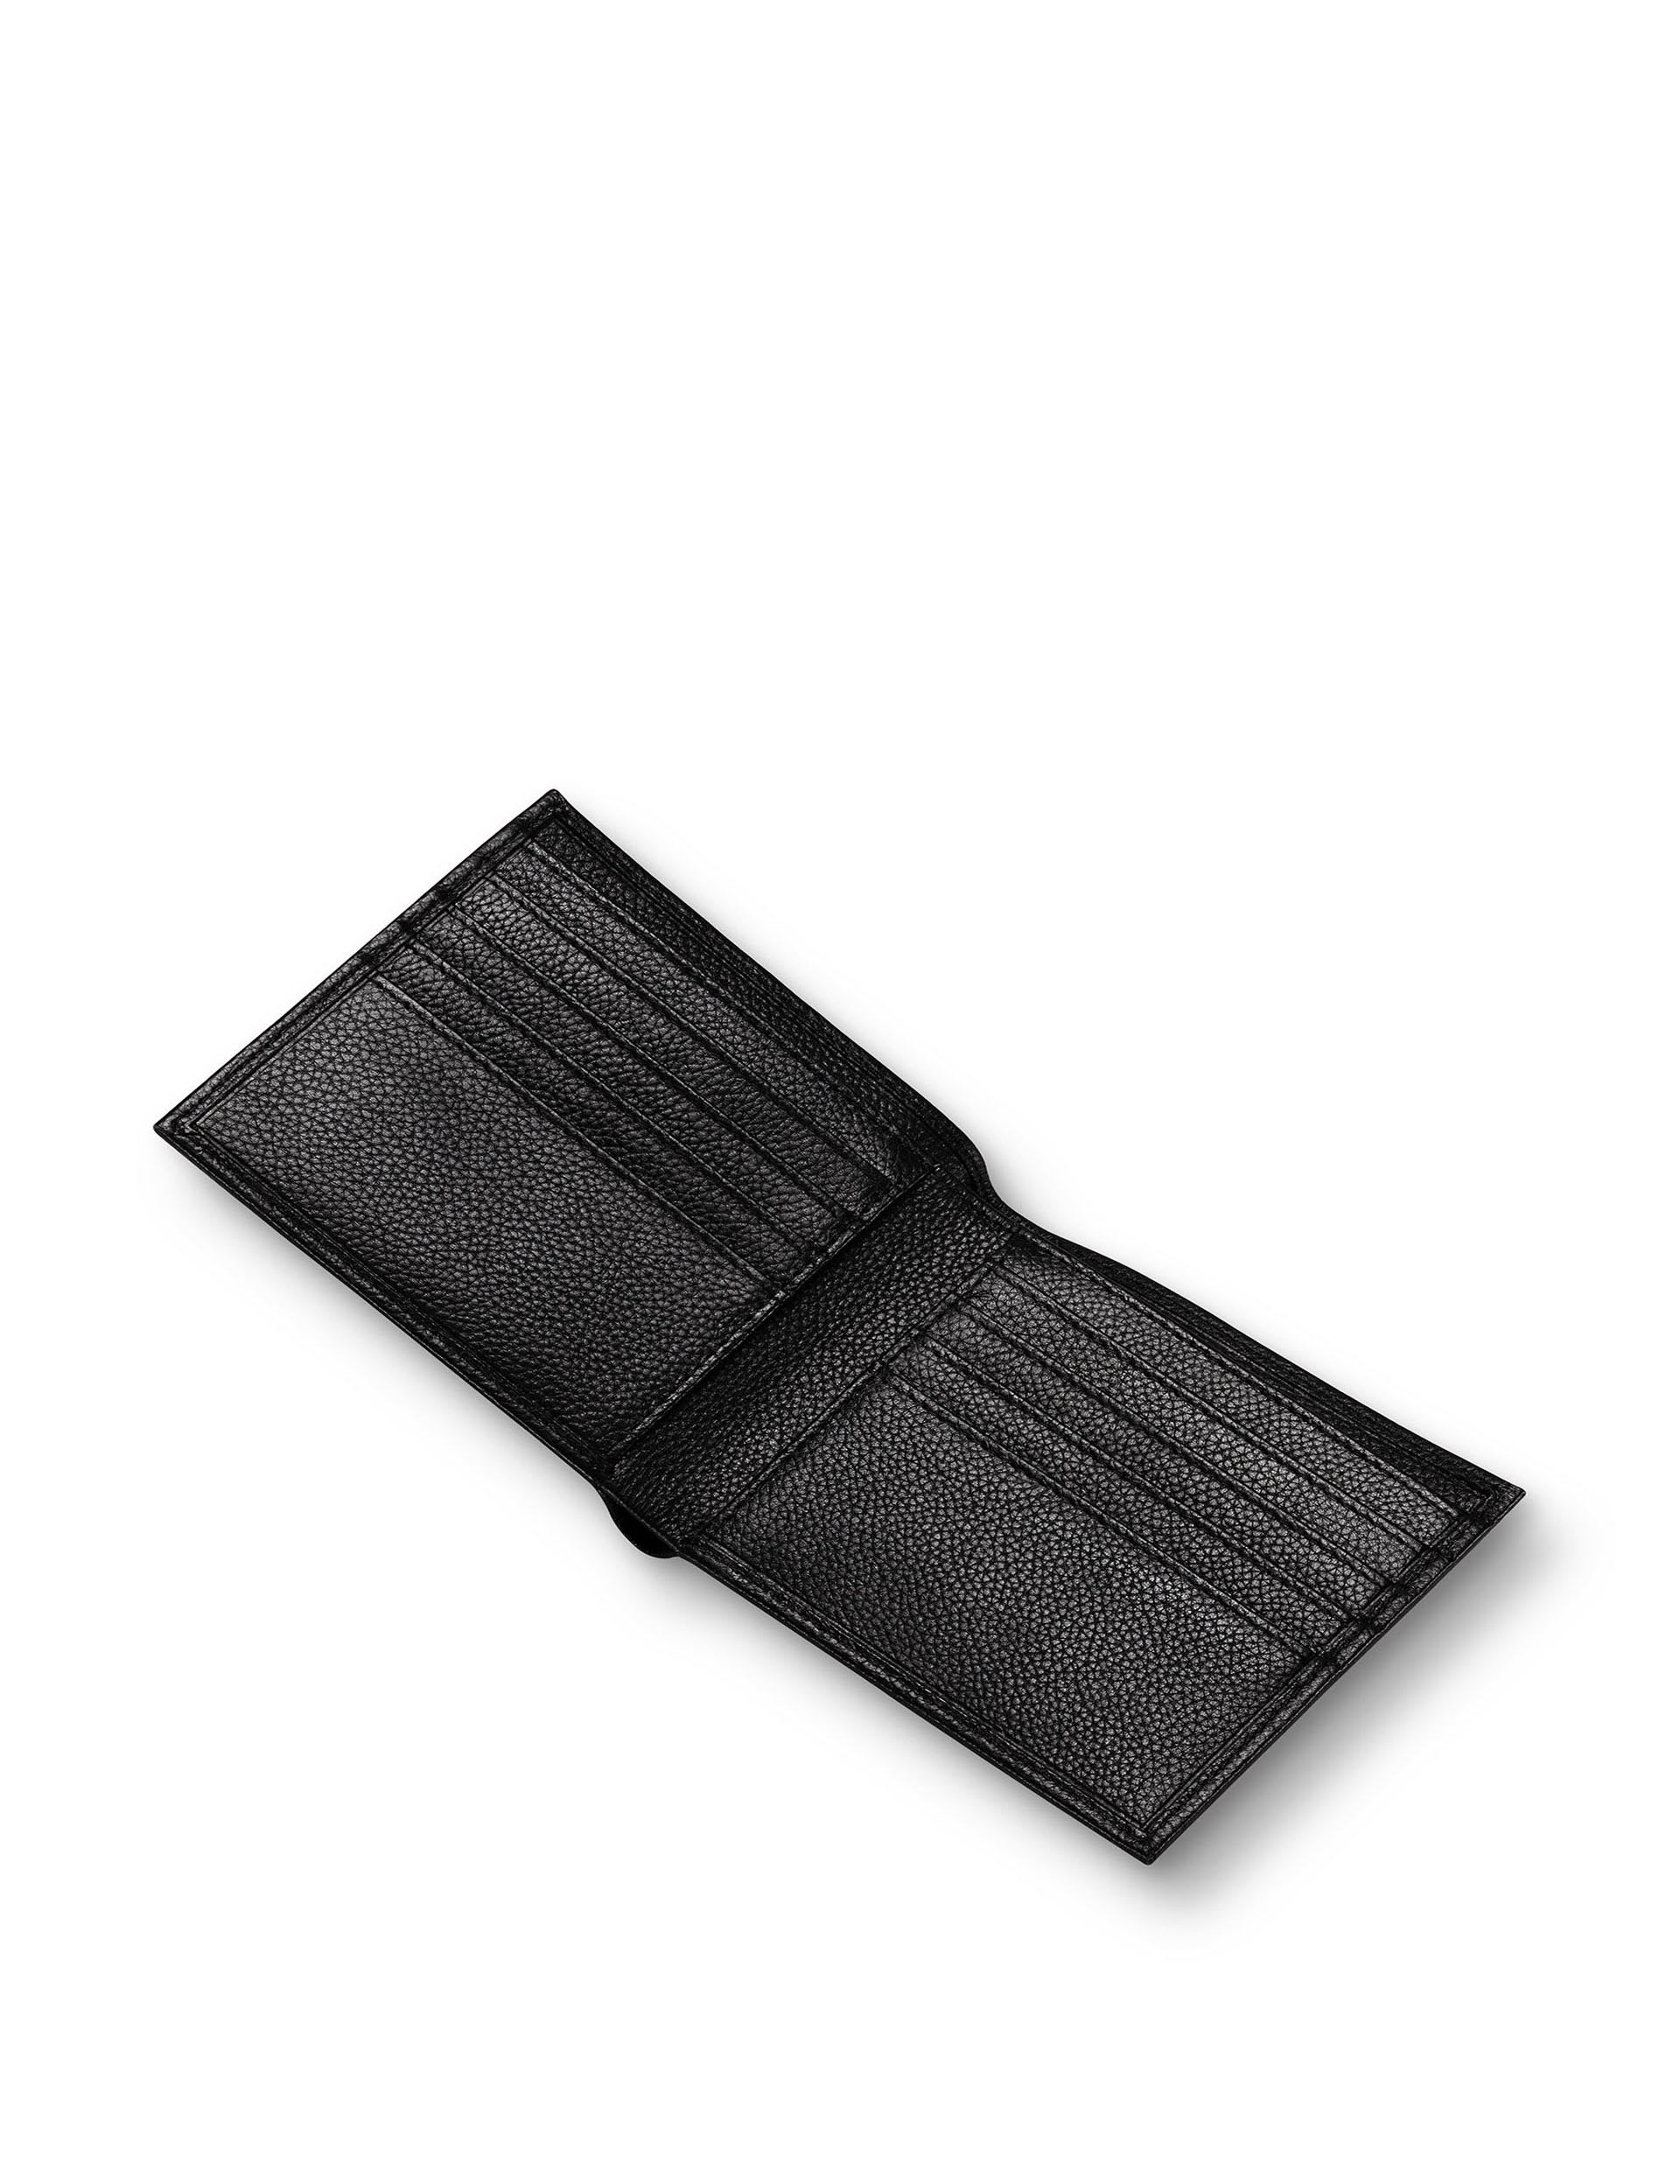 Leather Pebble Grain Bi-fold Wallet 3 of 3